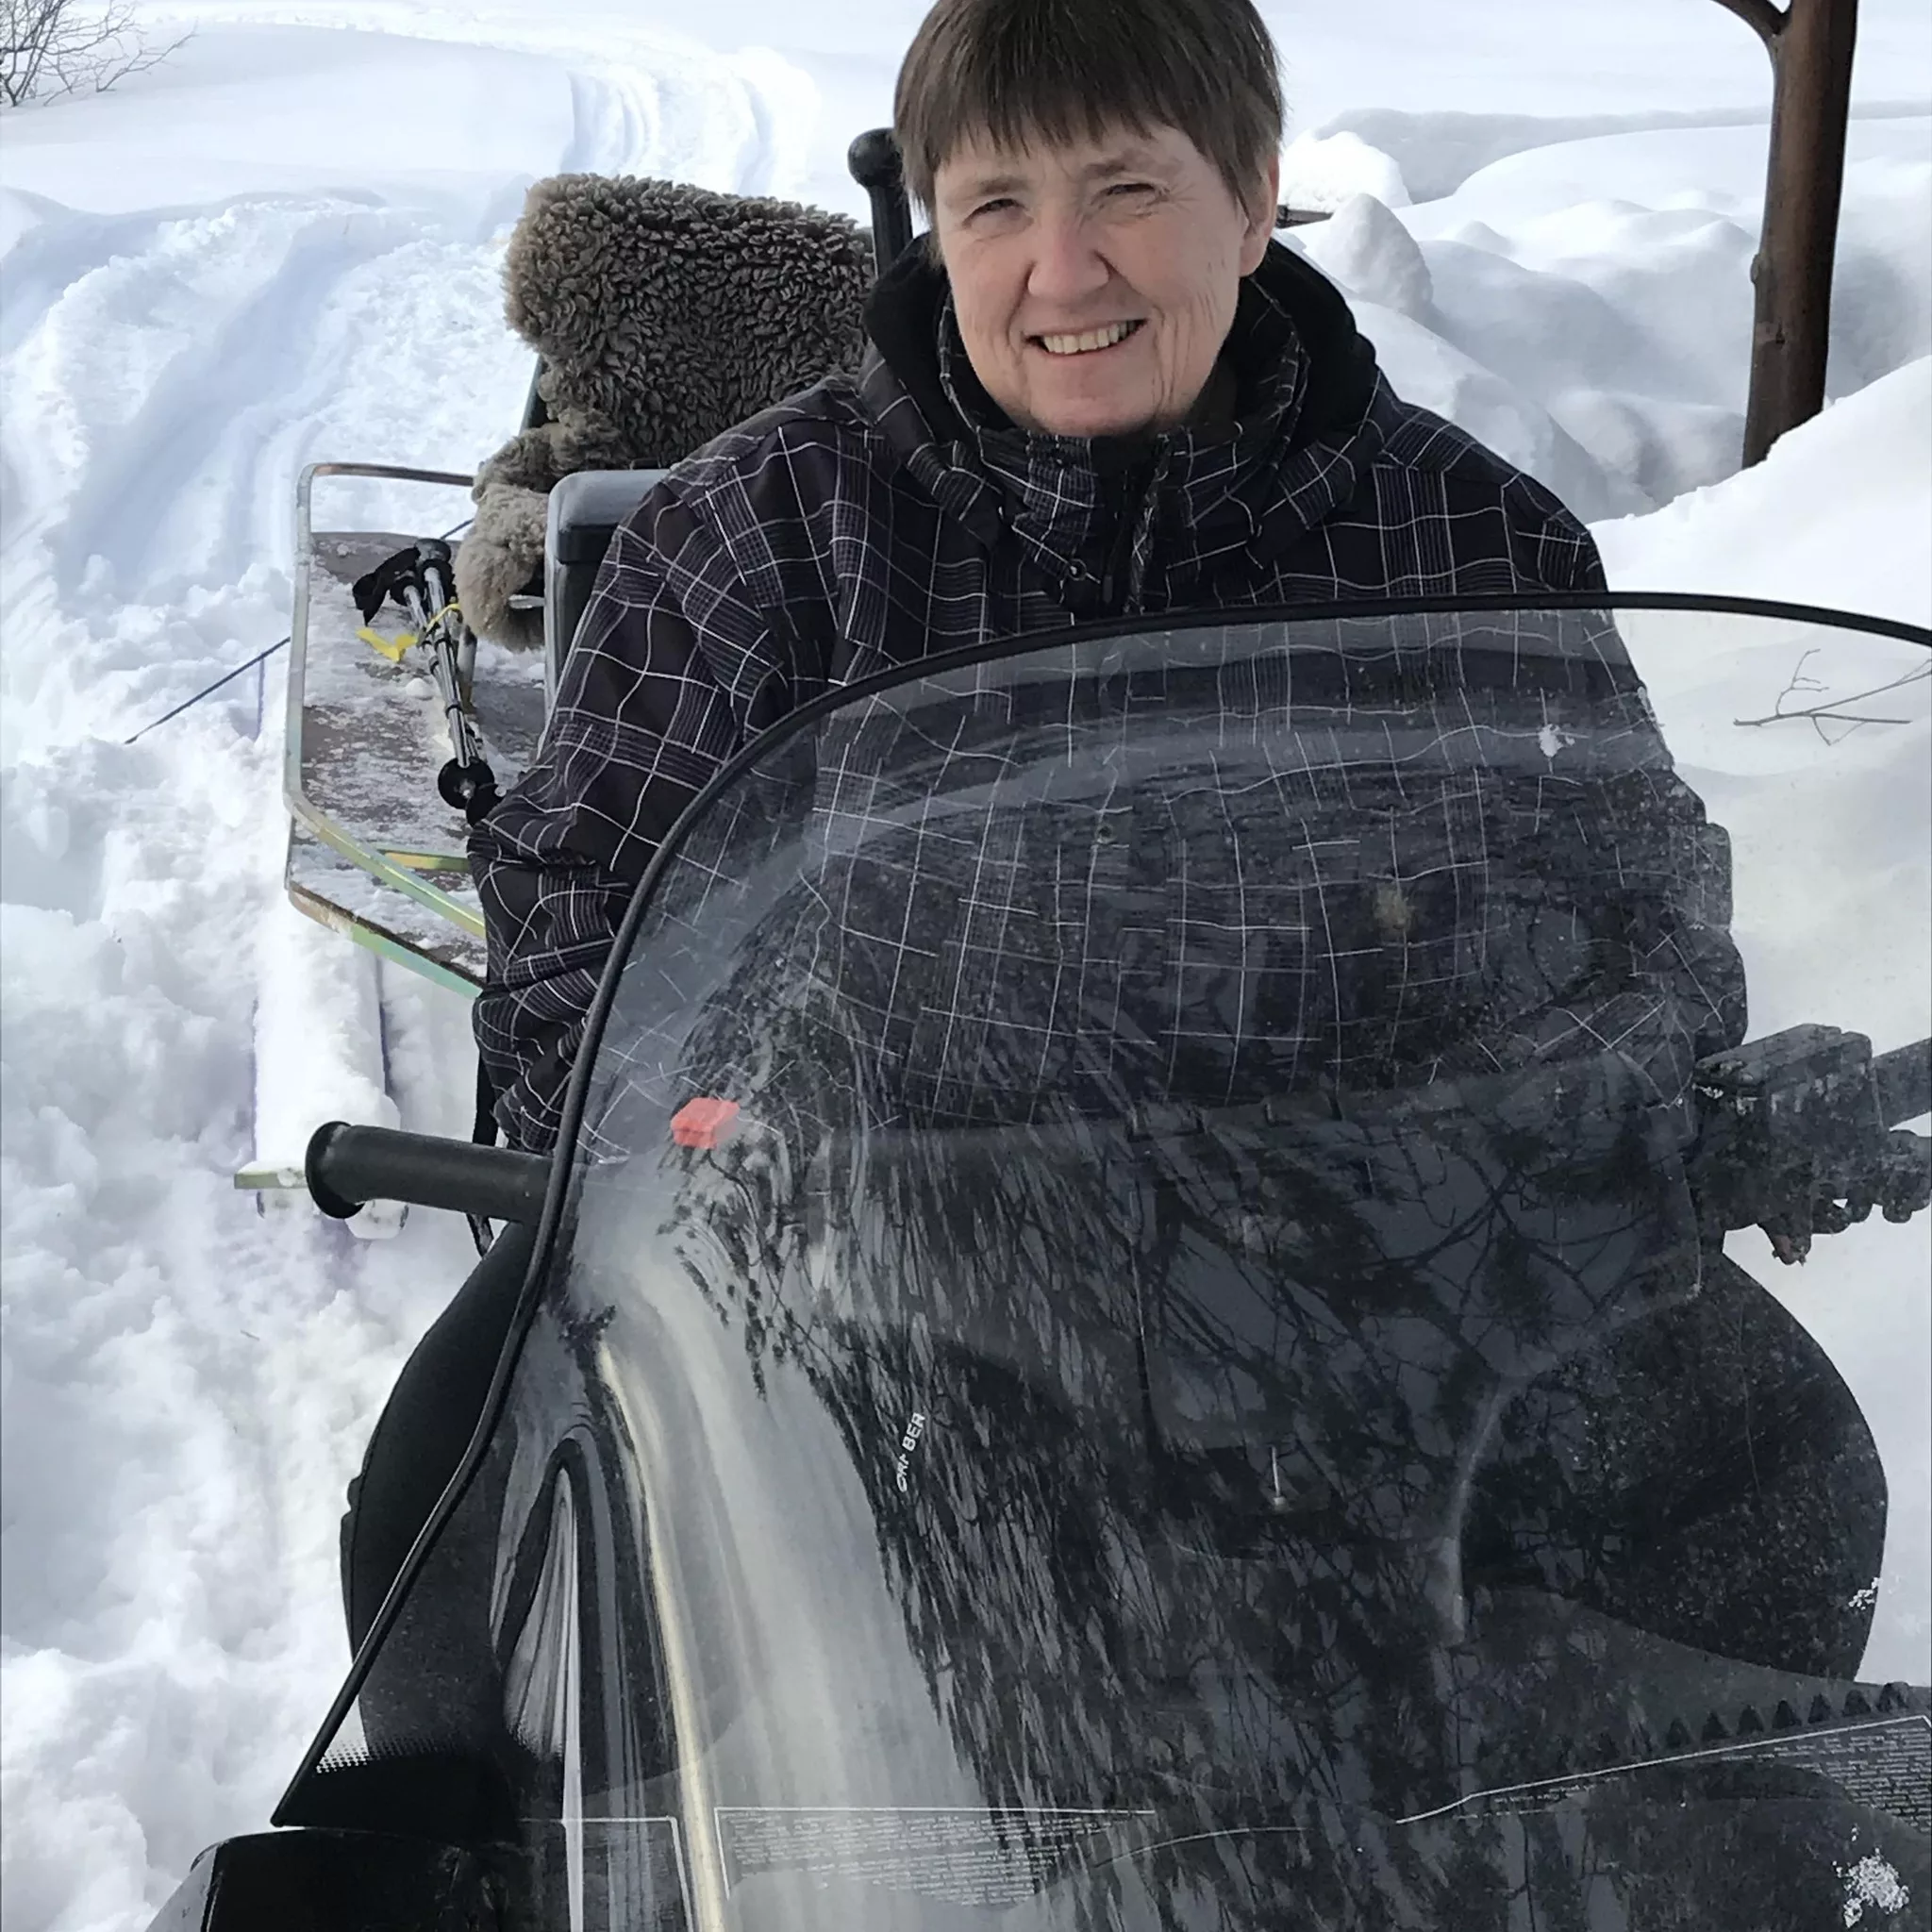 Bilde av Maya Haugan som sitter på en snøscooter. Mye snø i bakgrunn.